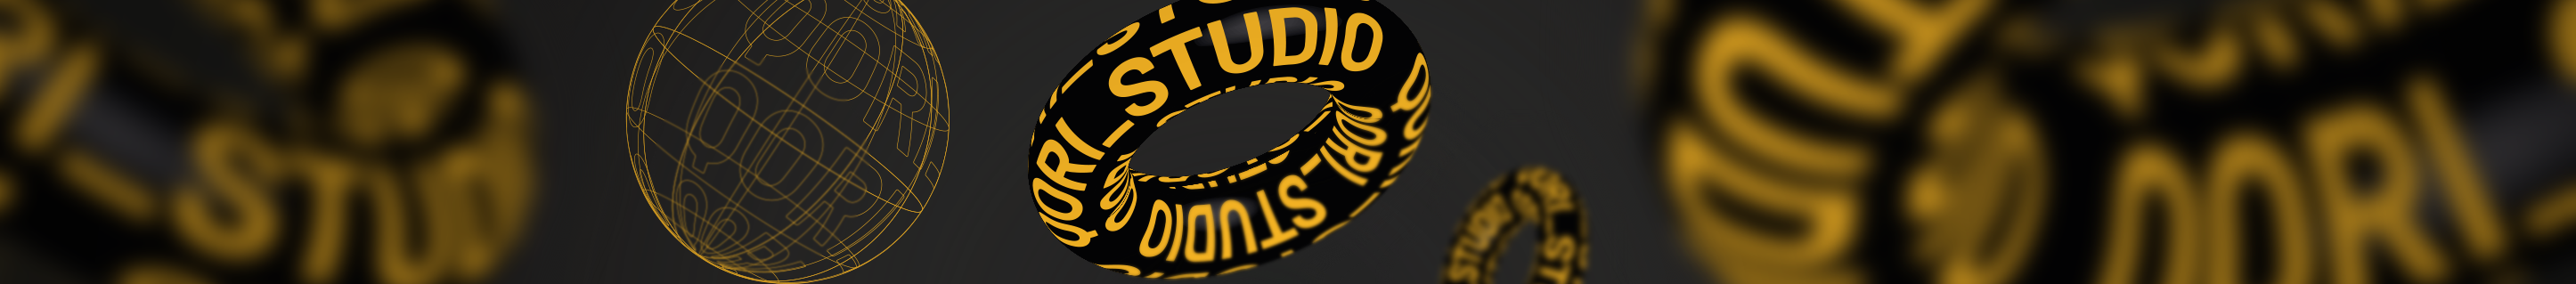 Qori Studio's profile banner